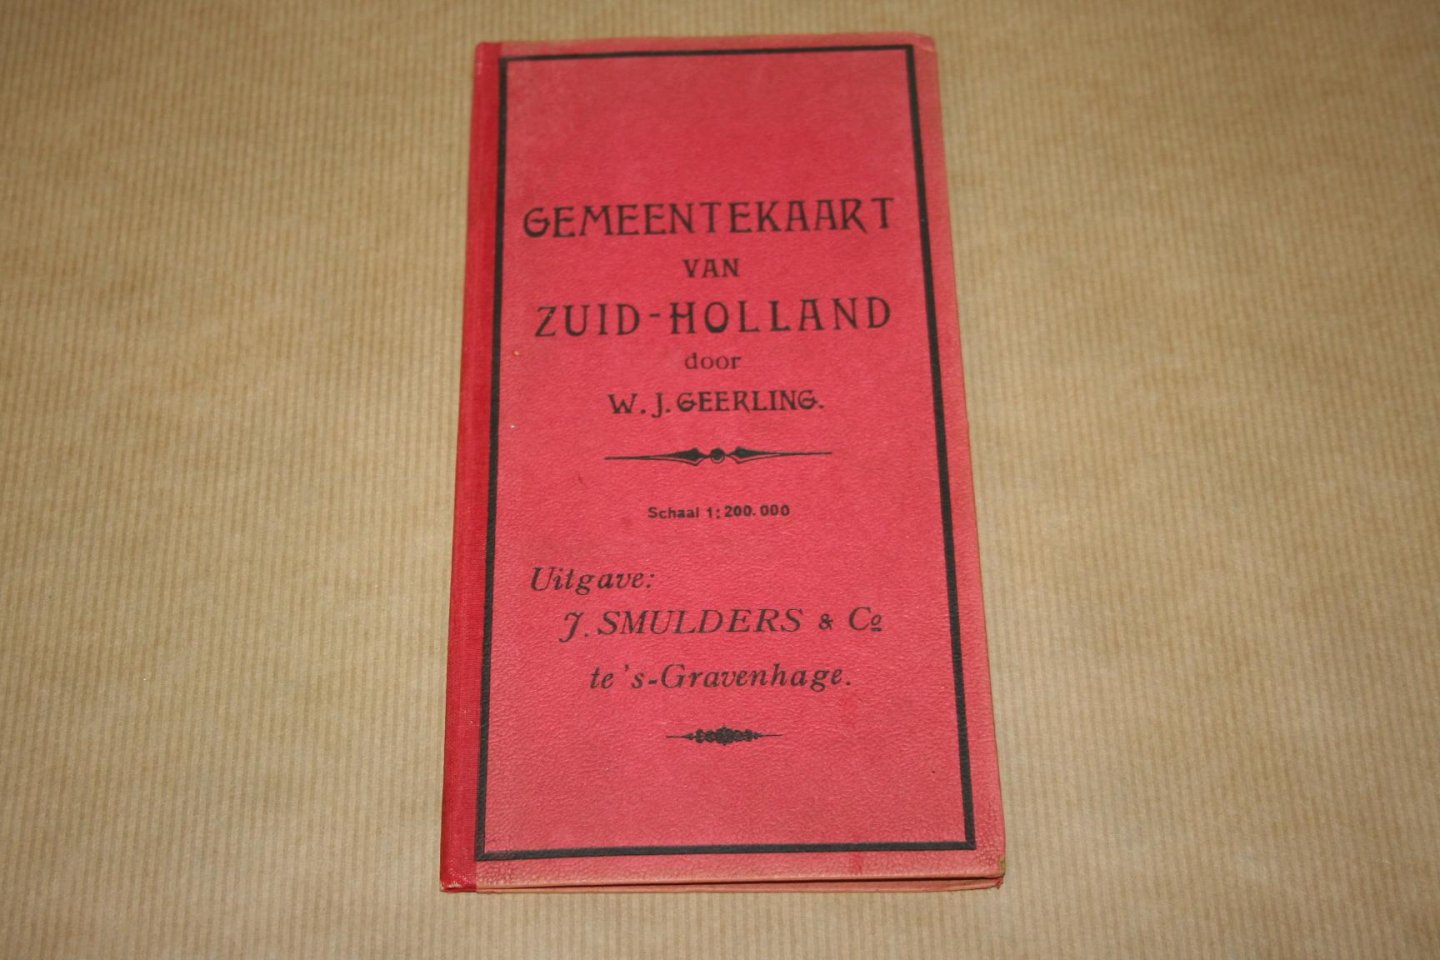 W.J. Geerling - Gemeentekaart van Zuid-Holland